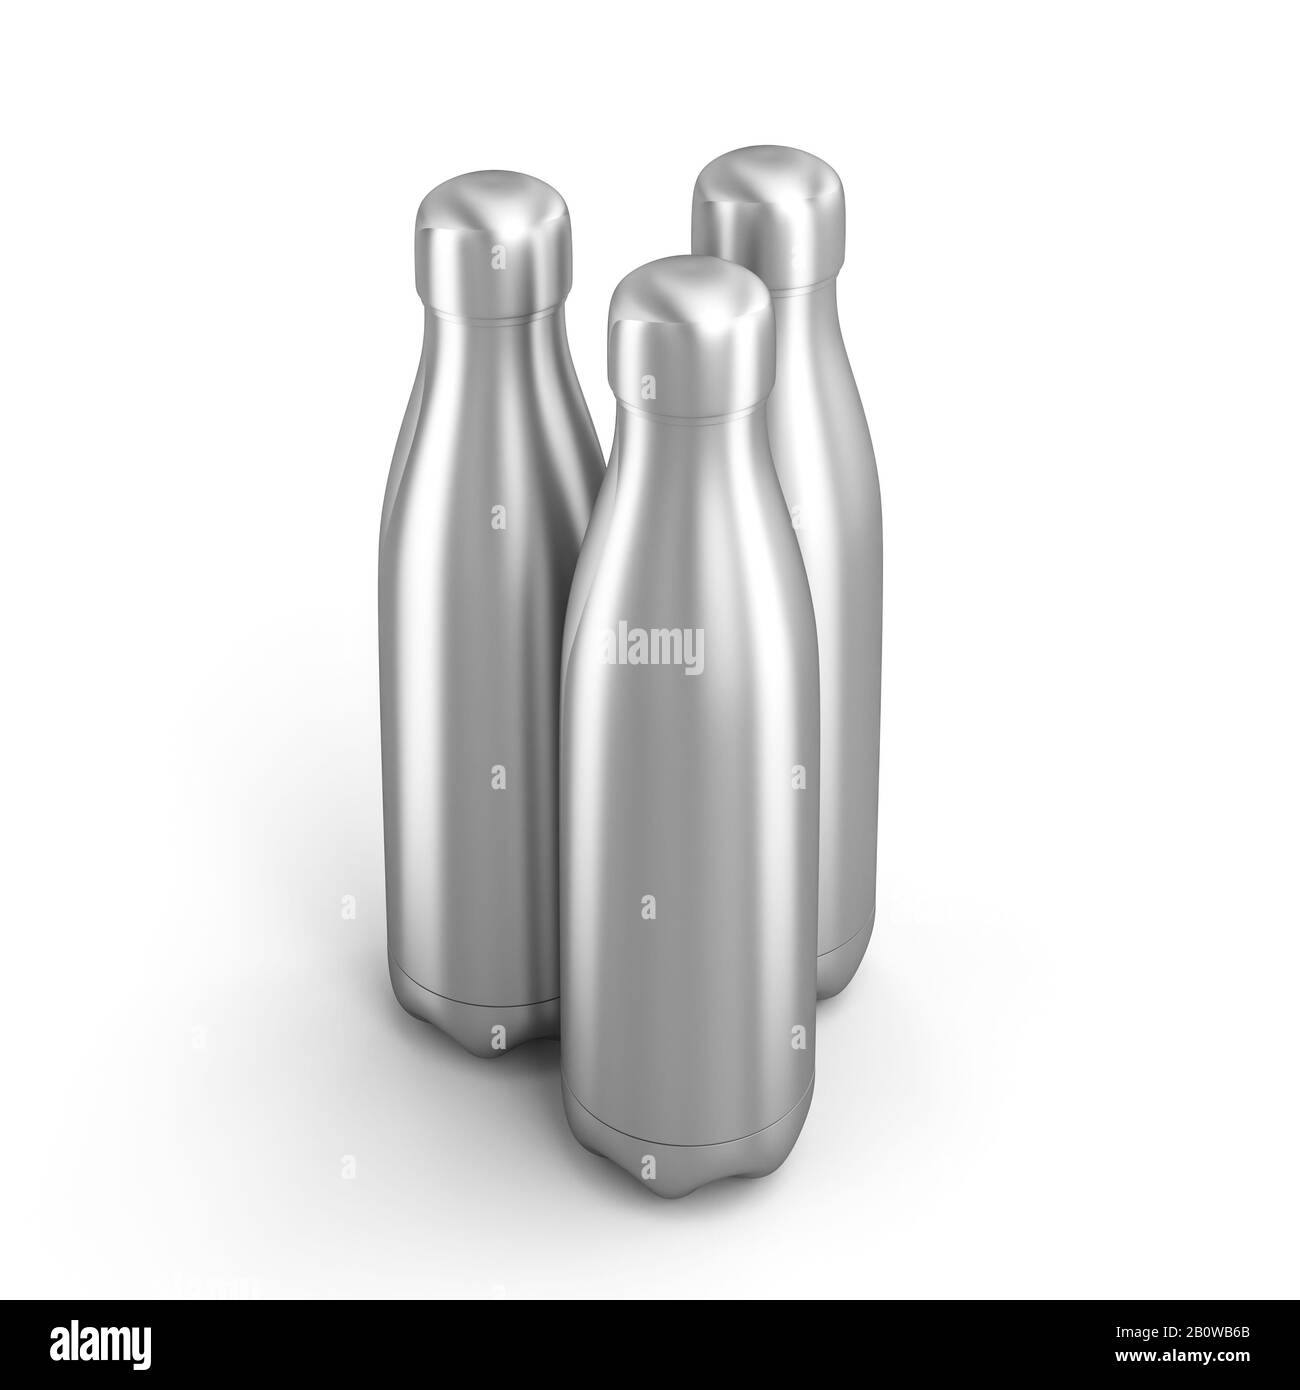 image 3d de 3 bouteilles d'acier réutilisables. format carré. concept éco-durabilité. Banque D'Images